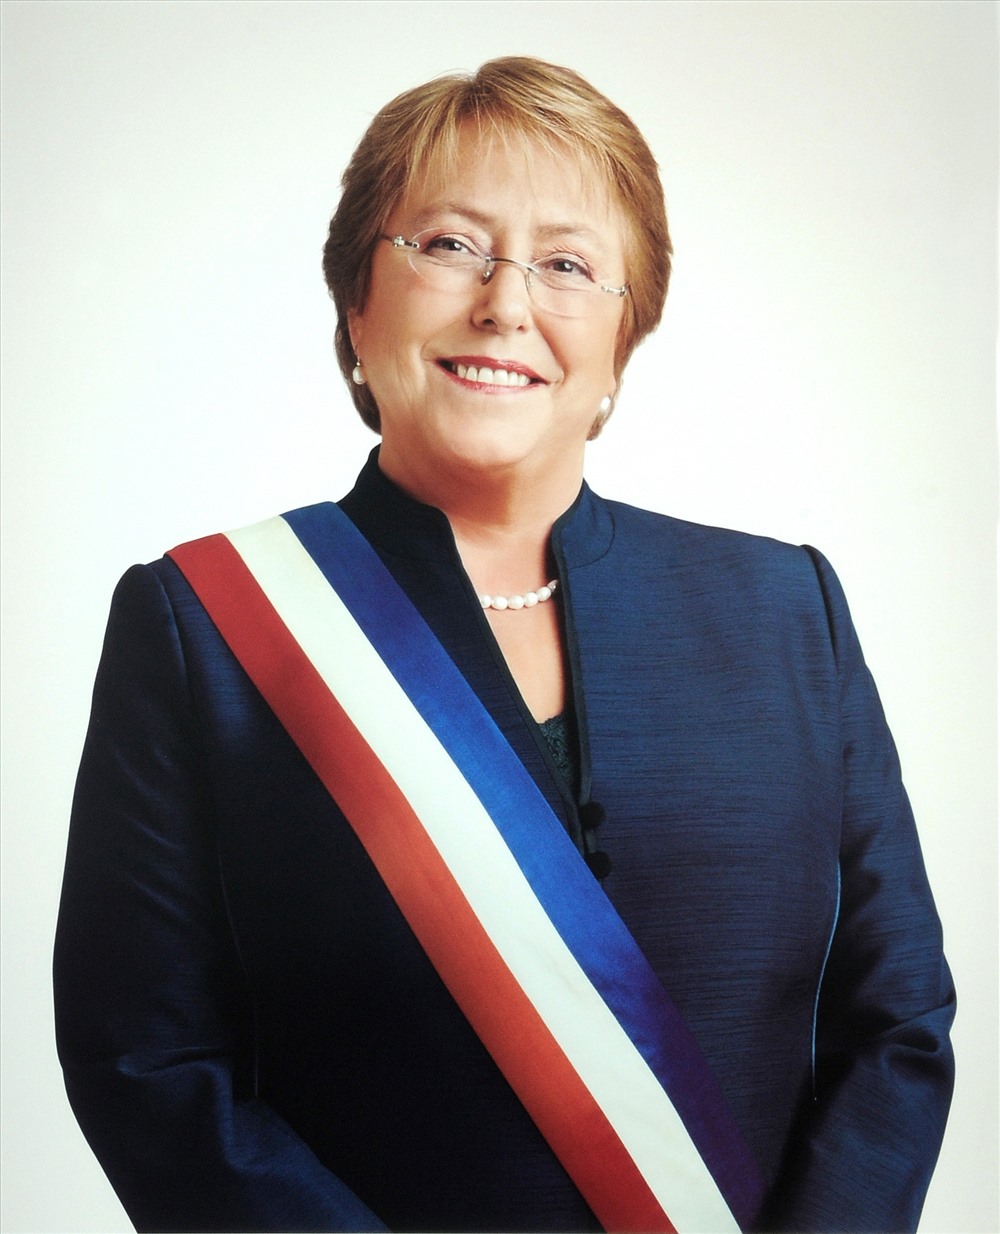 Tổng thống nước Cộng hòa Chile Michelle Bachelet Jeria. Ảnh: VBC